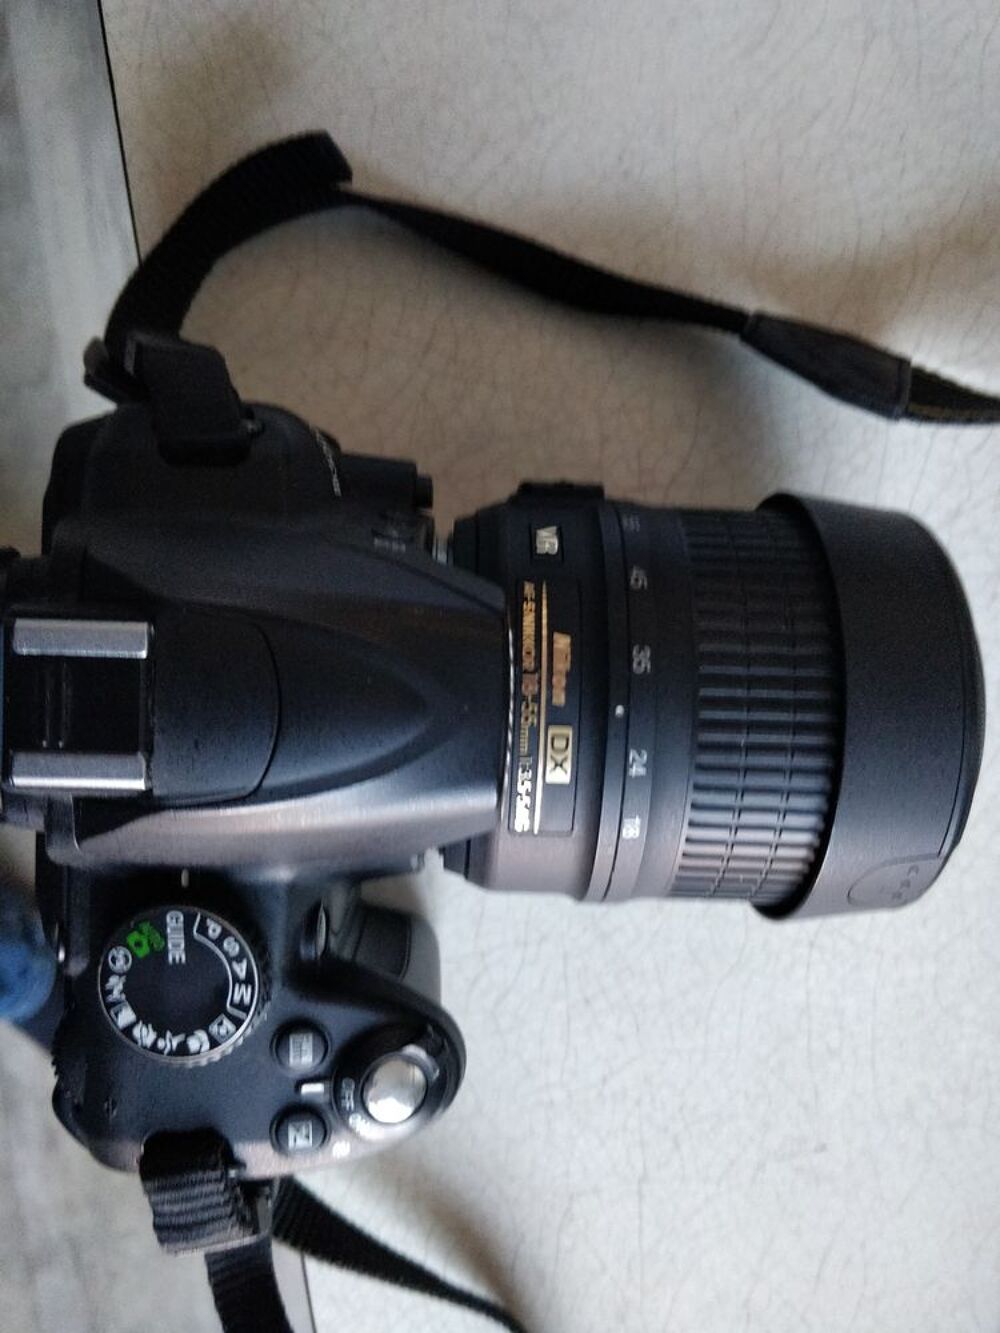 Reflex Nikon D3000 - Noir + Objectif Nikon 18-55mm f/3.5-5.6 Photos/Video/TV